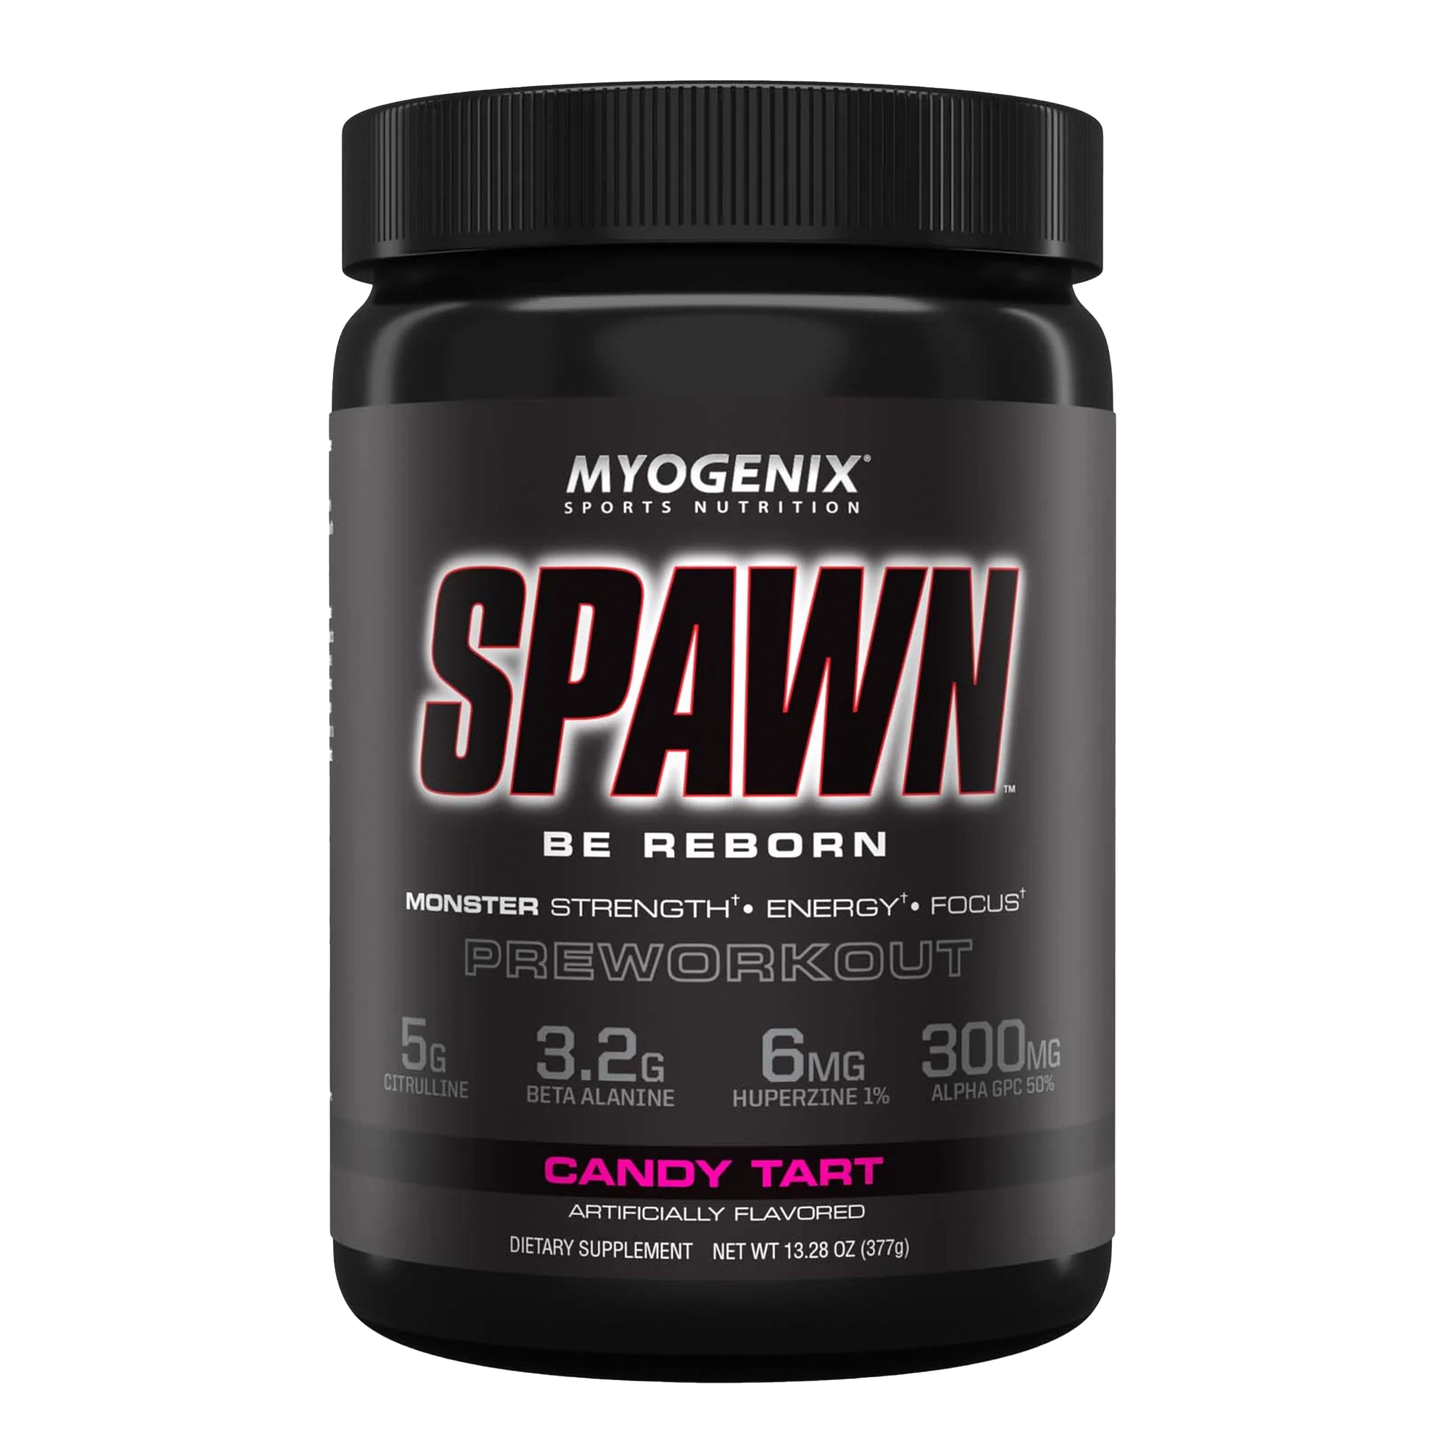 Myogenix Spawn Be Reborn Pre Workout 25 servings